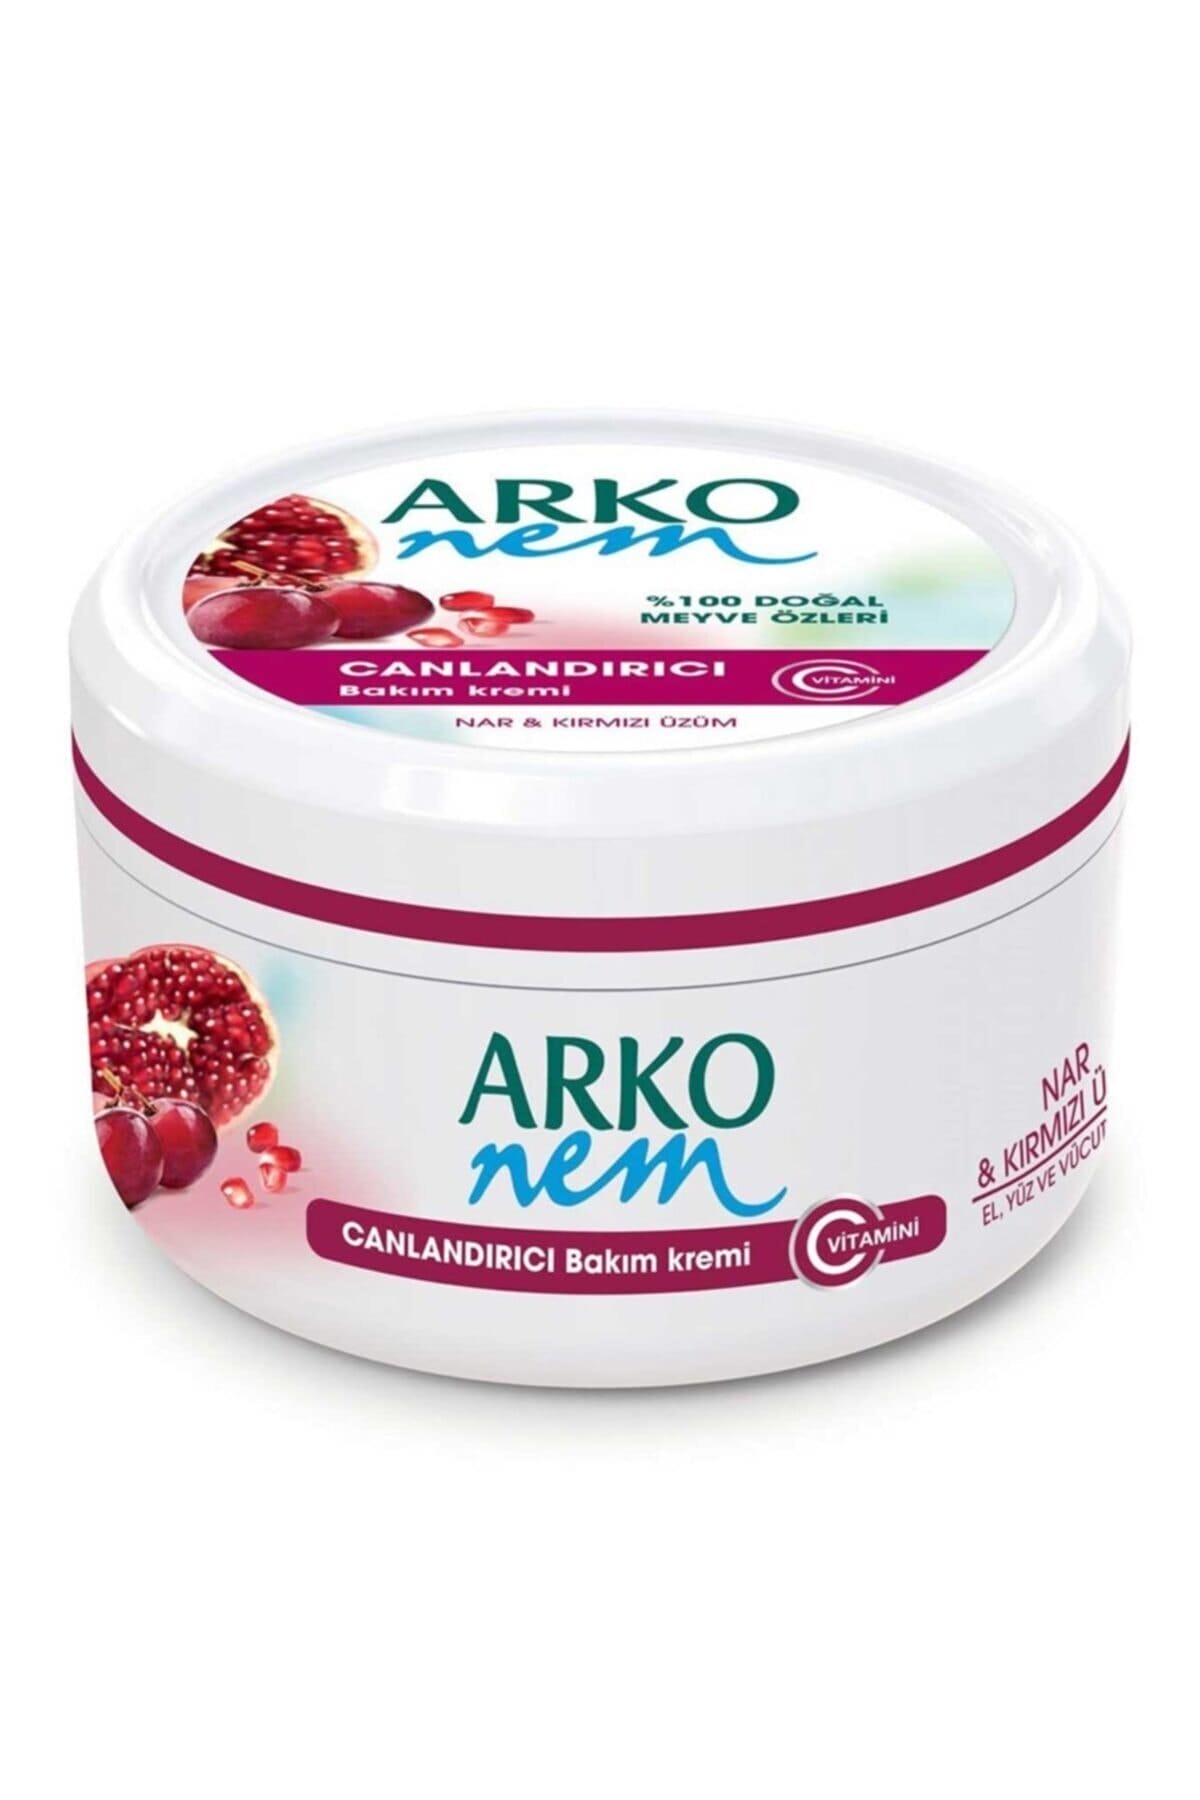 Arko Krem Meyve Bakımı Nar&üzüm 300 Ml